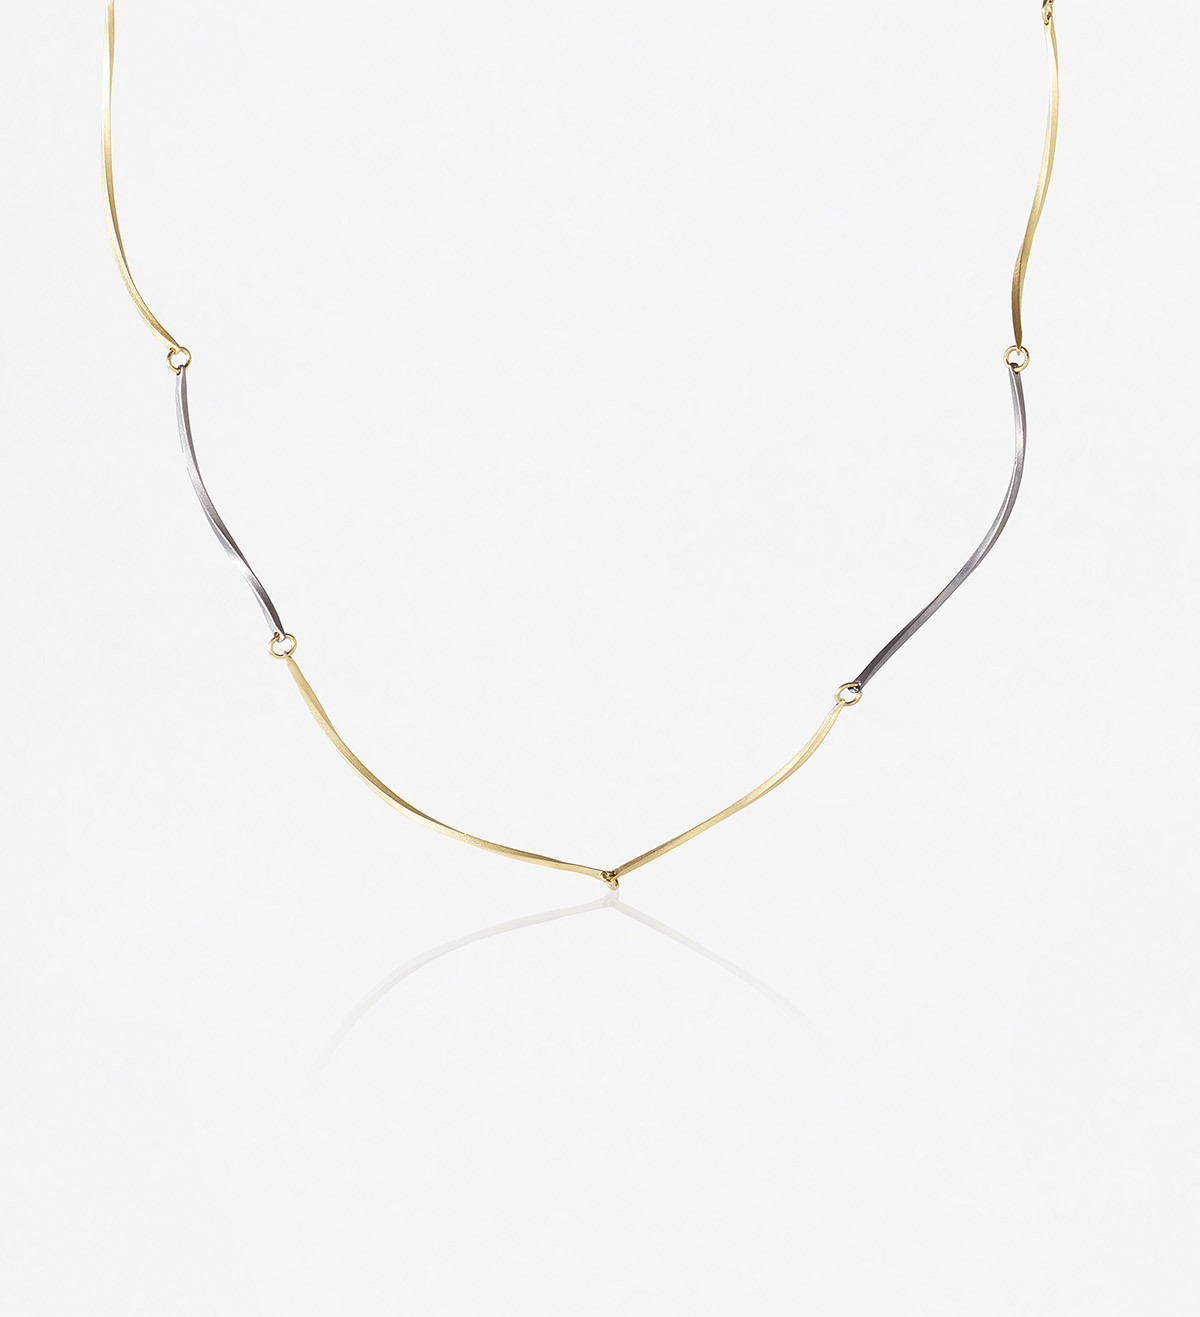 18k gold and titanium necklace Pinassa 43.5cm